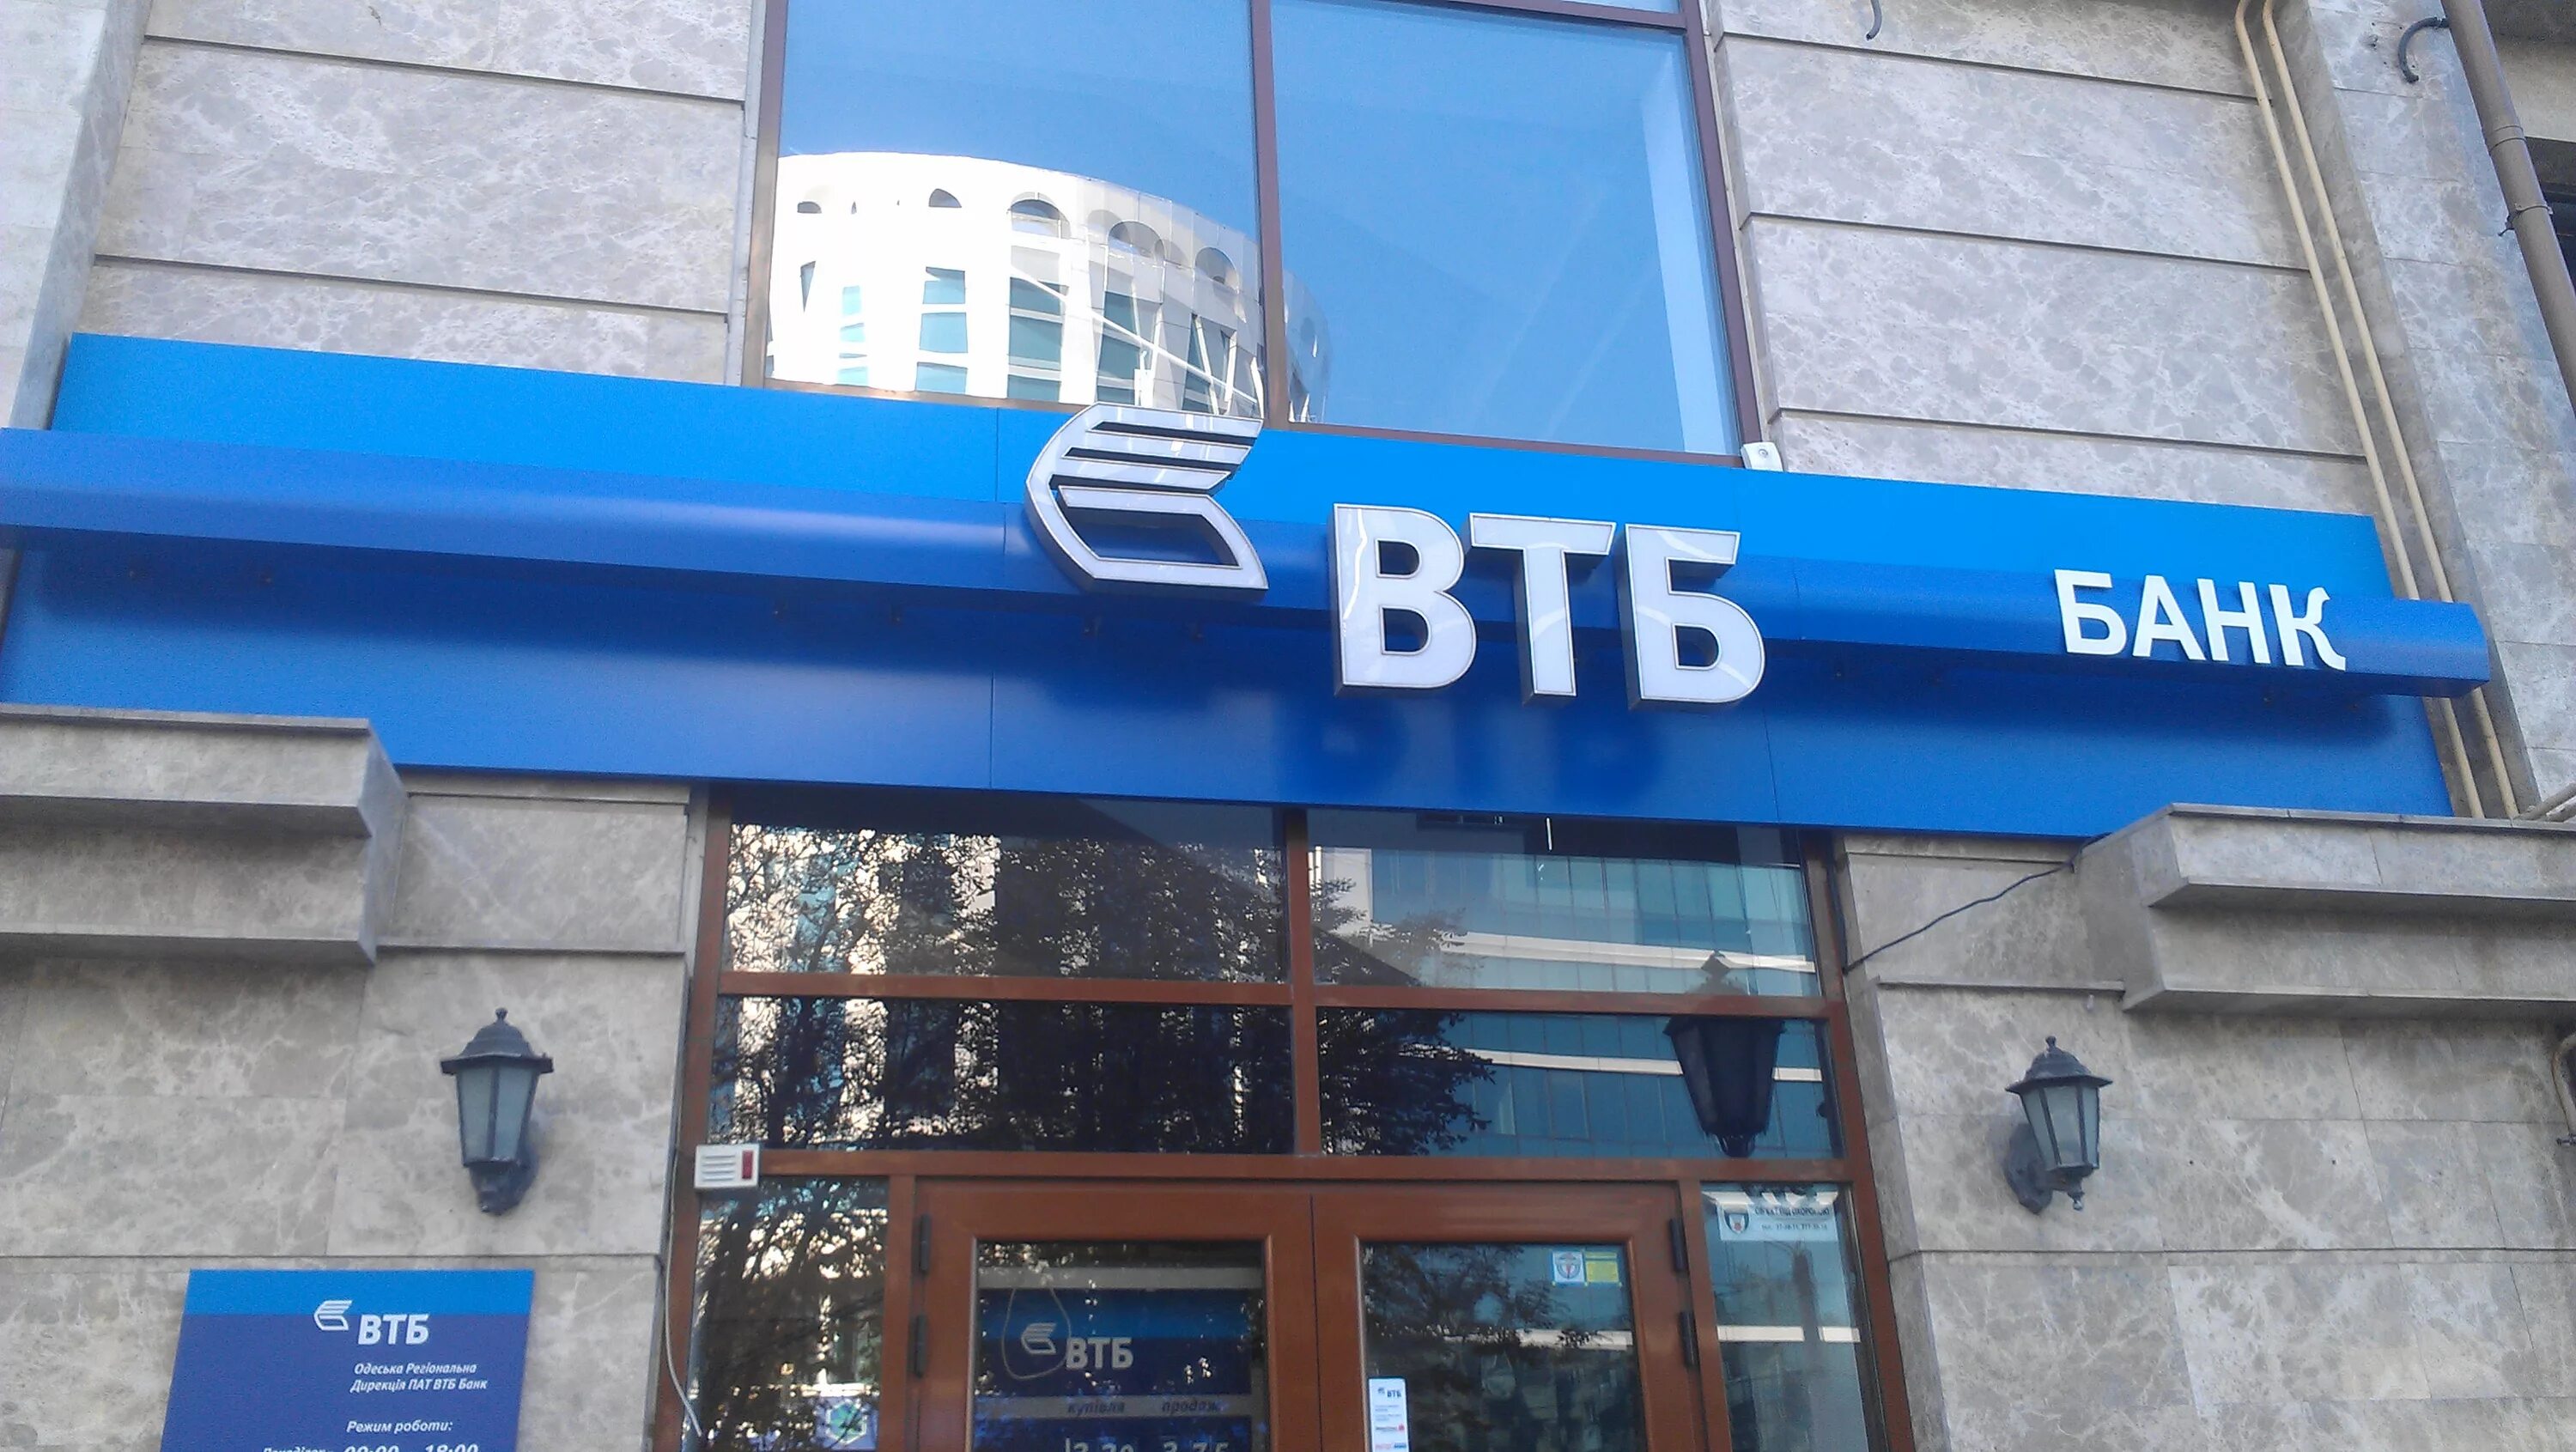 ВТБ банк. ВТБ отделения. ВТБ банк Украина. Офис банка ВТБ.